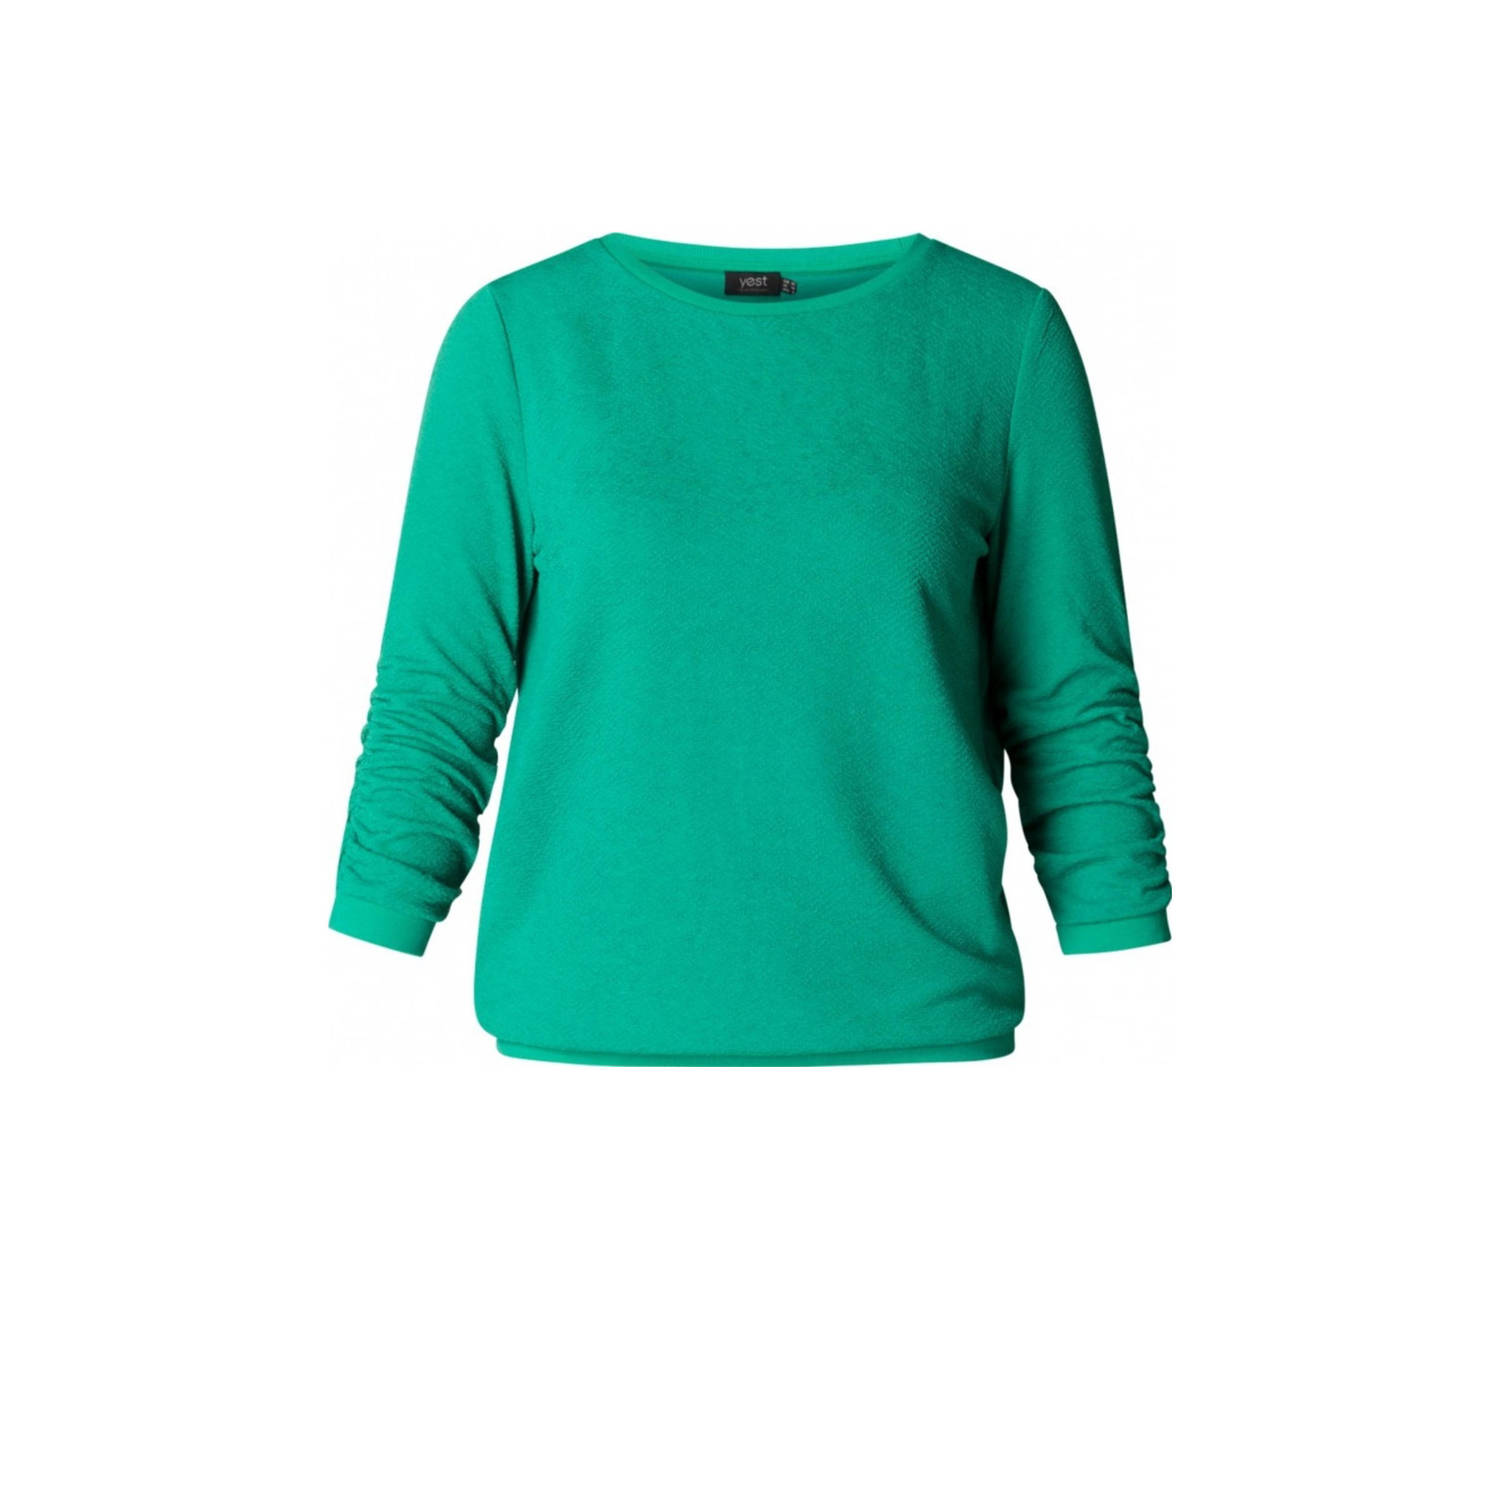 Yesta fijngebreide trui met textuur groen